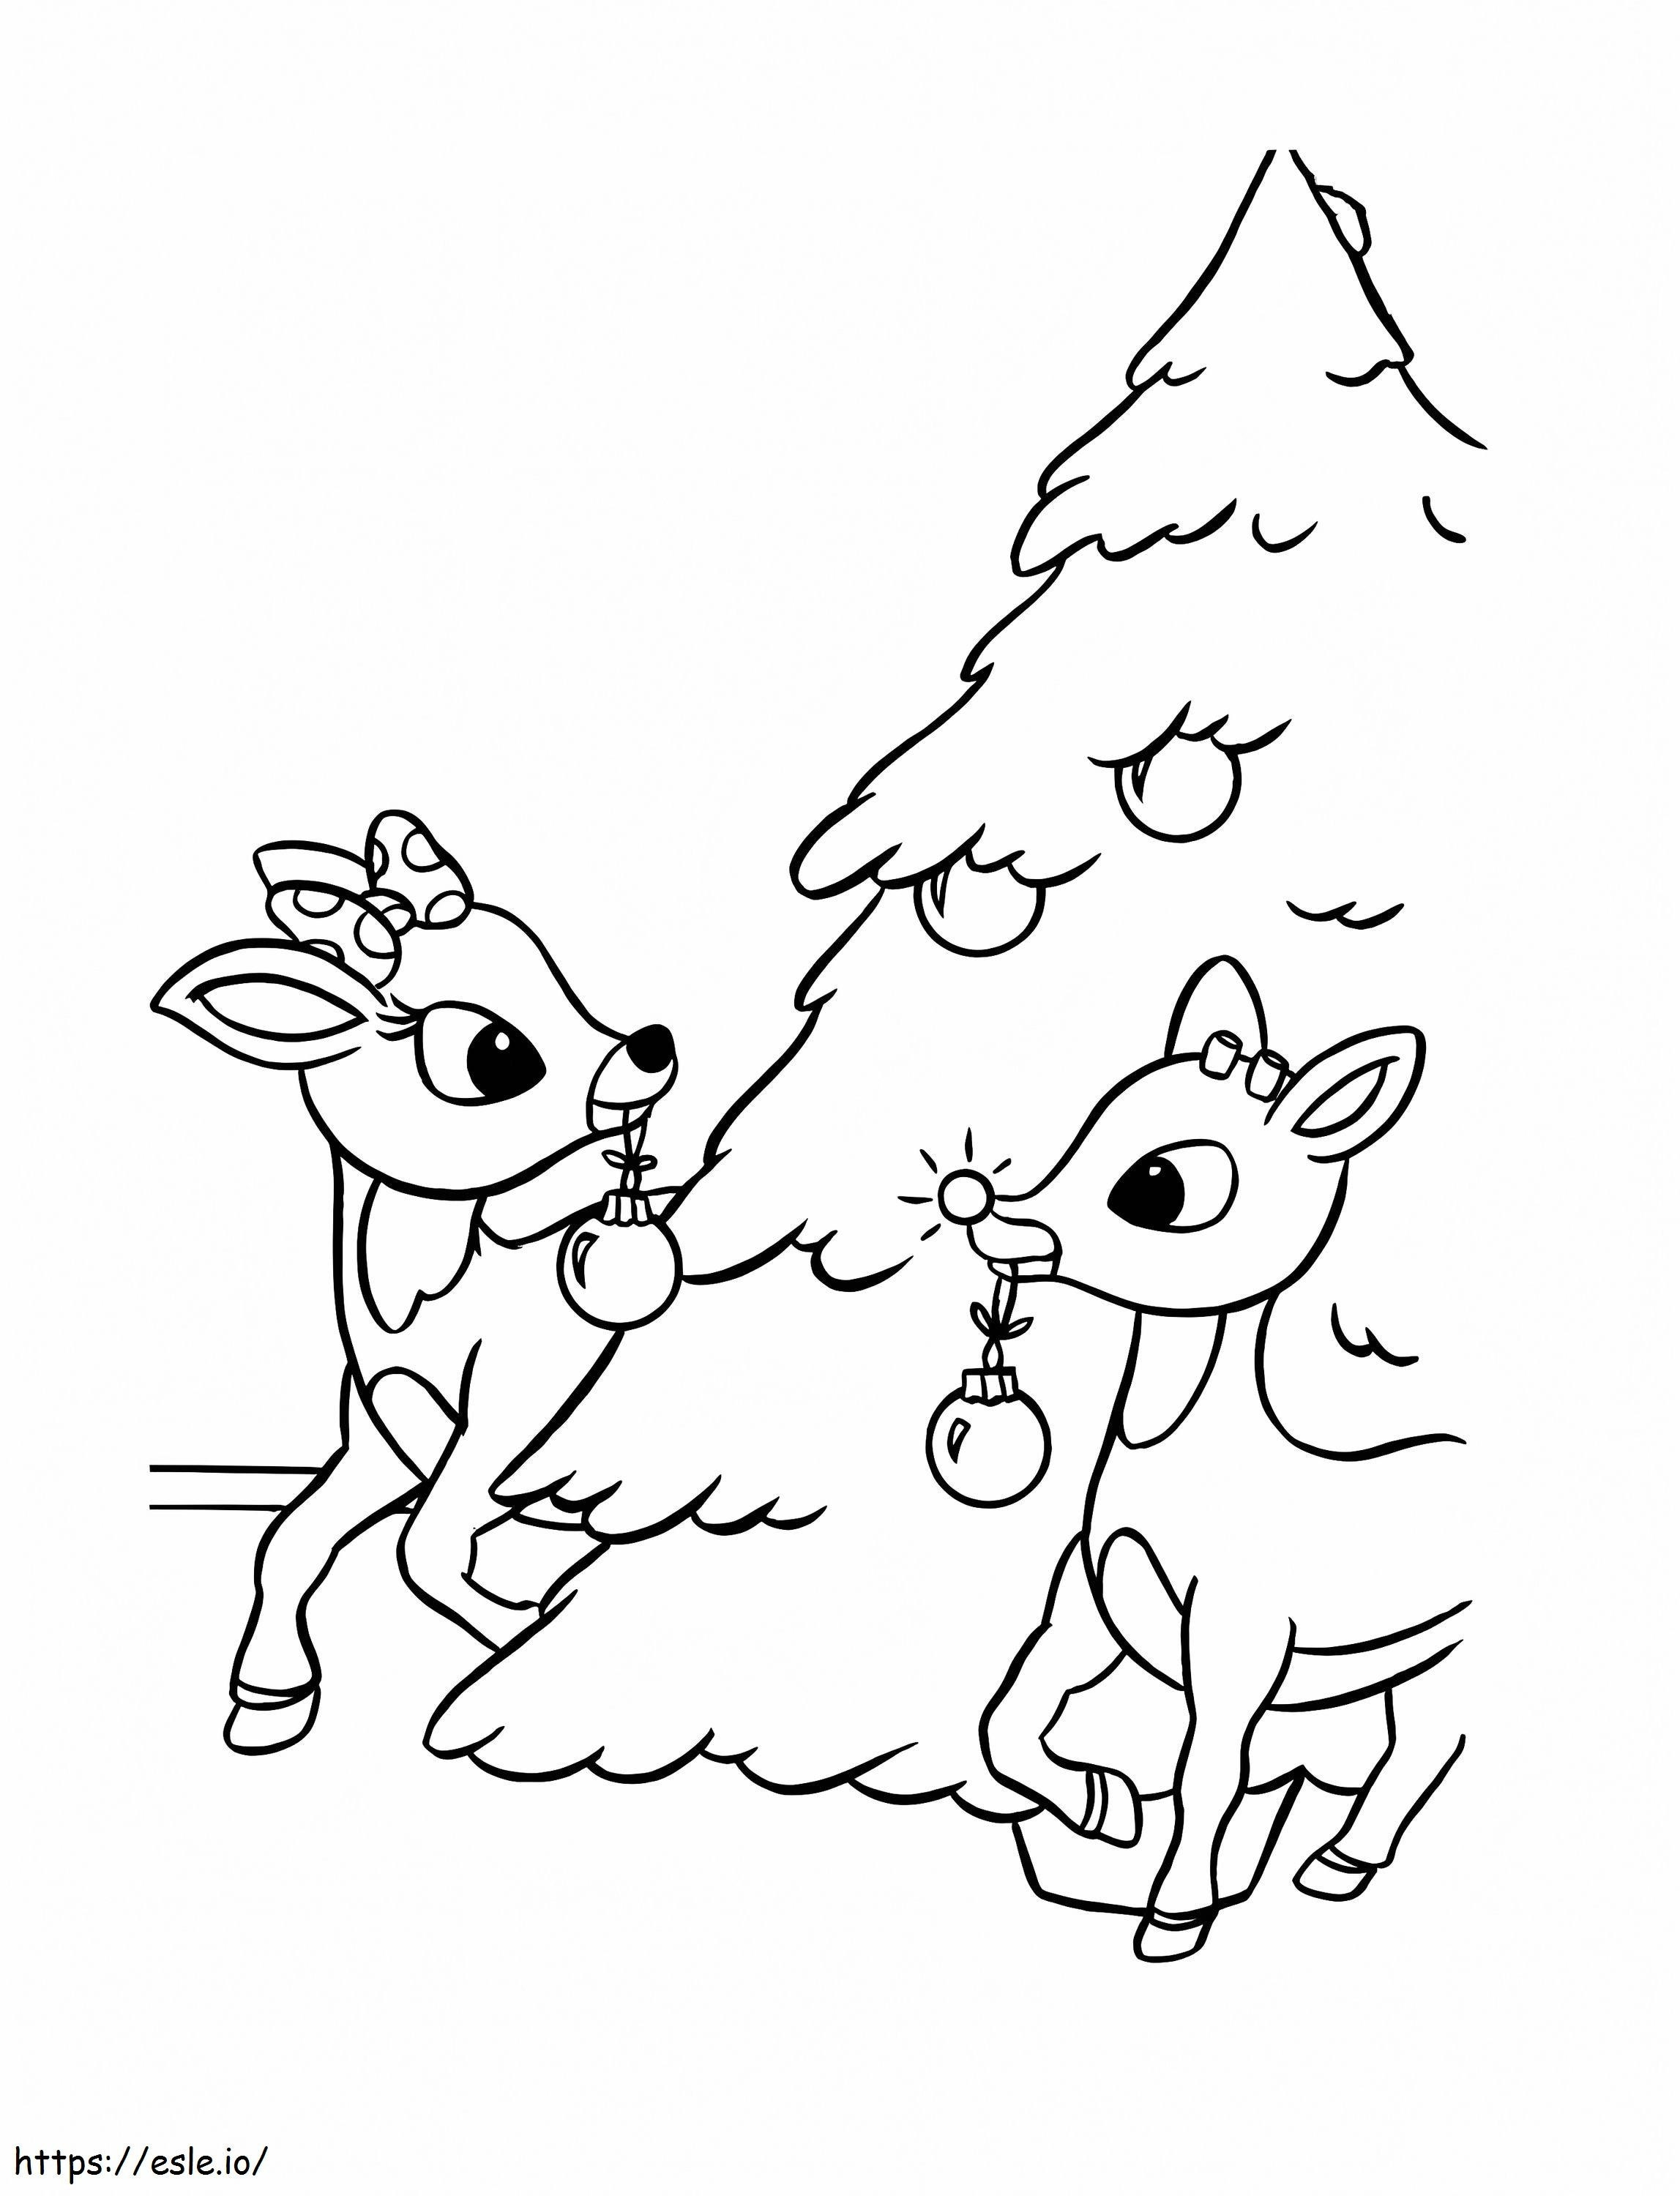 Rudolph und Weihnachtsbaum ausmalbilder